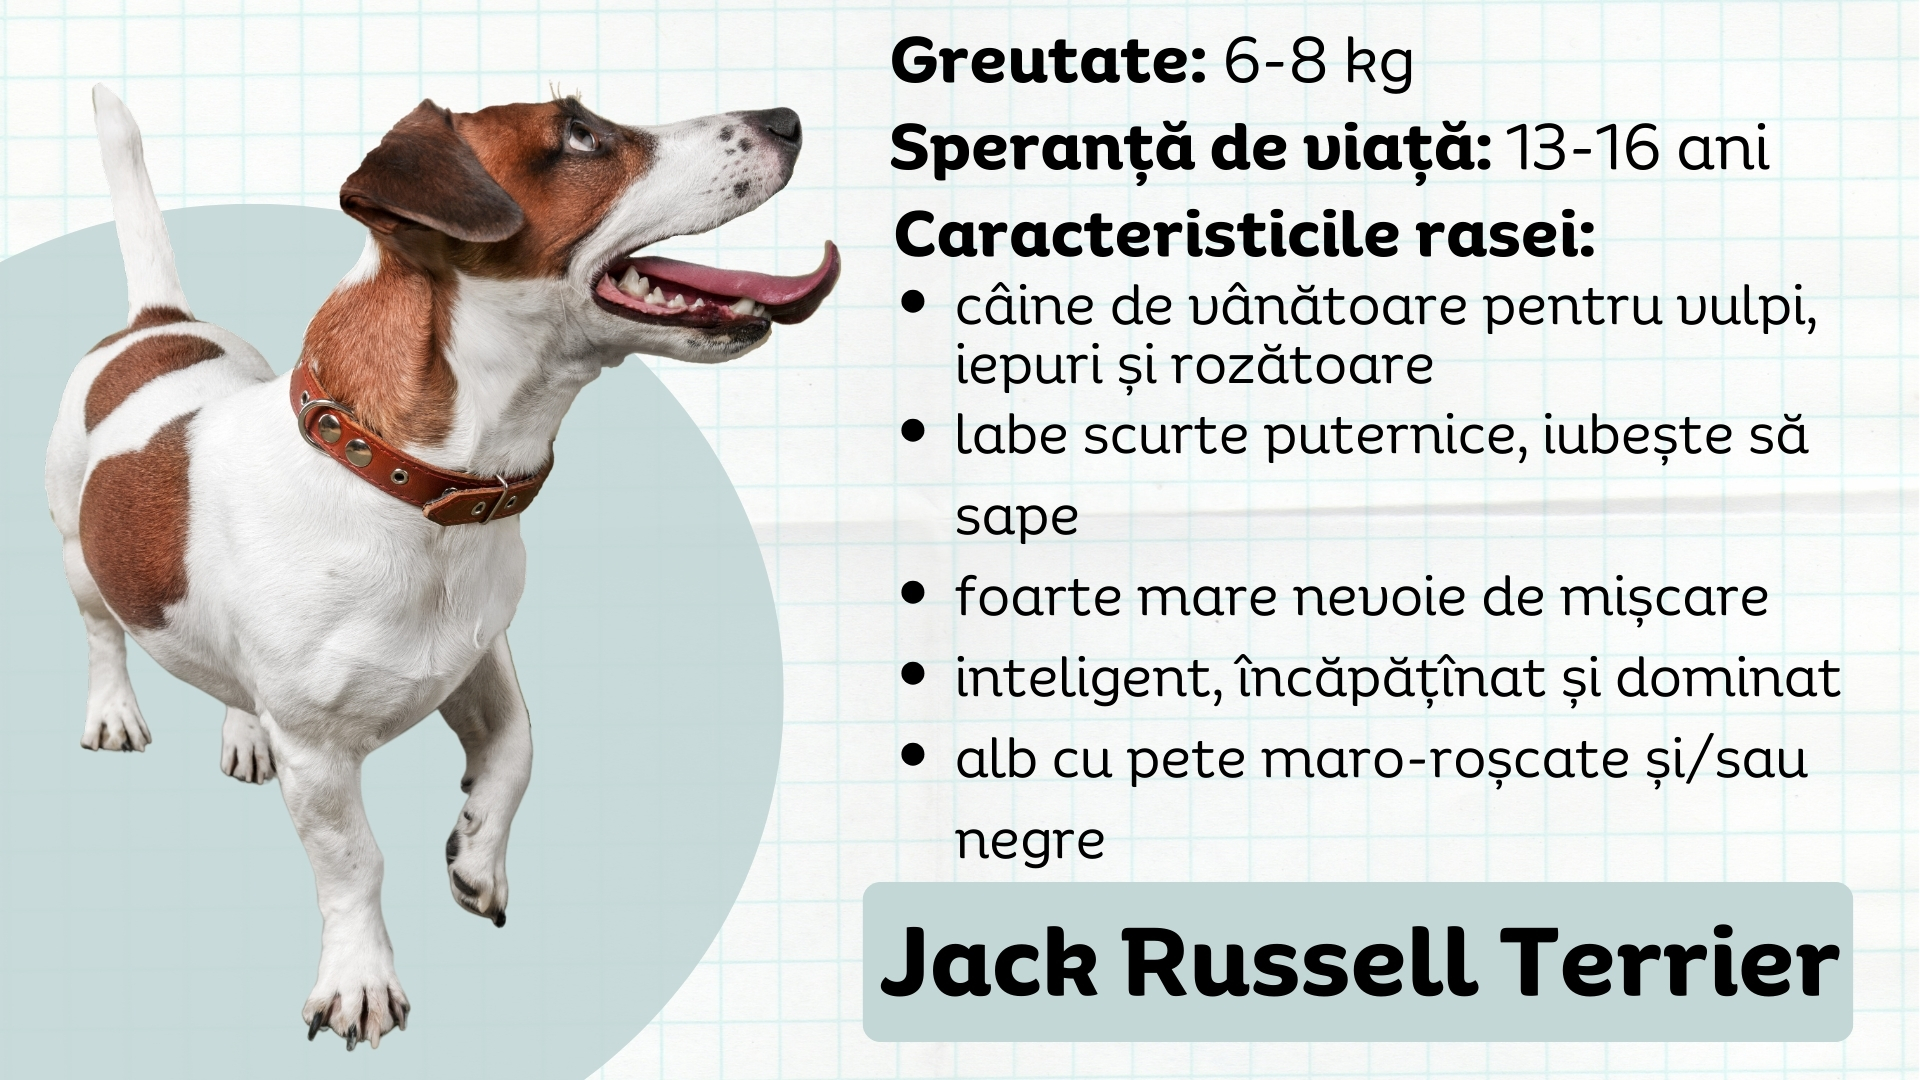 Jack Russell Terrier caracteristicile rasei